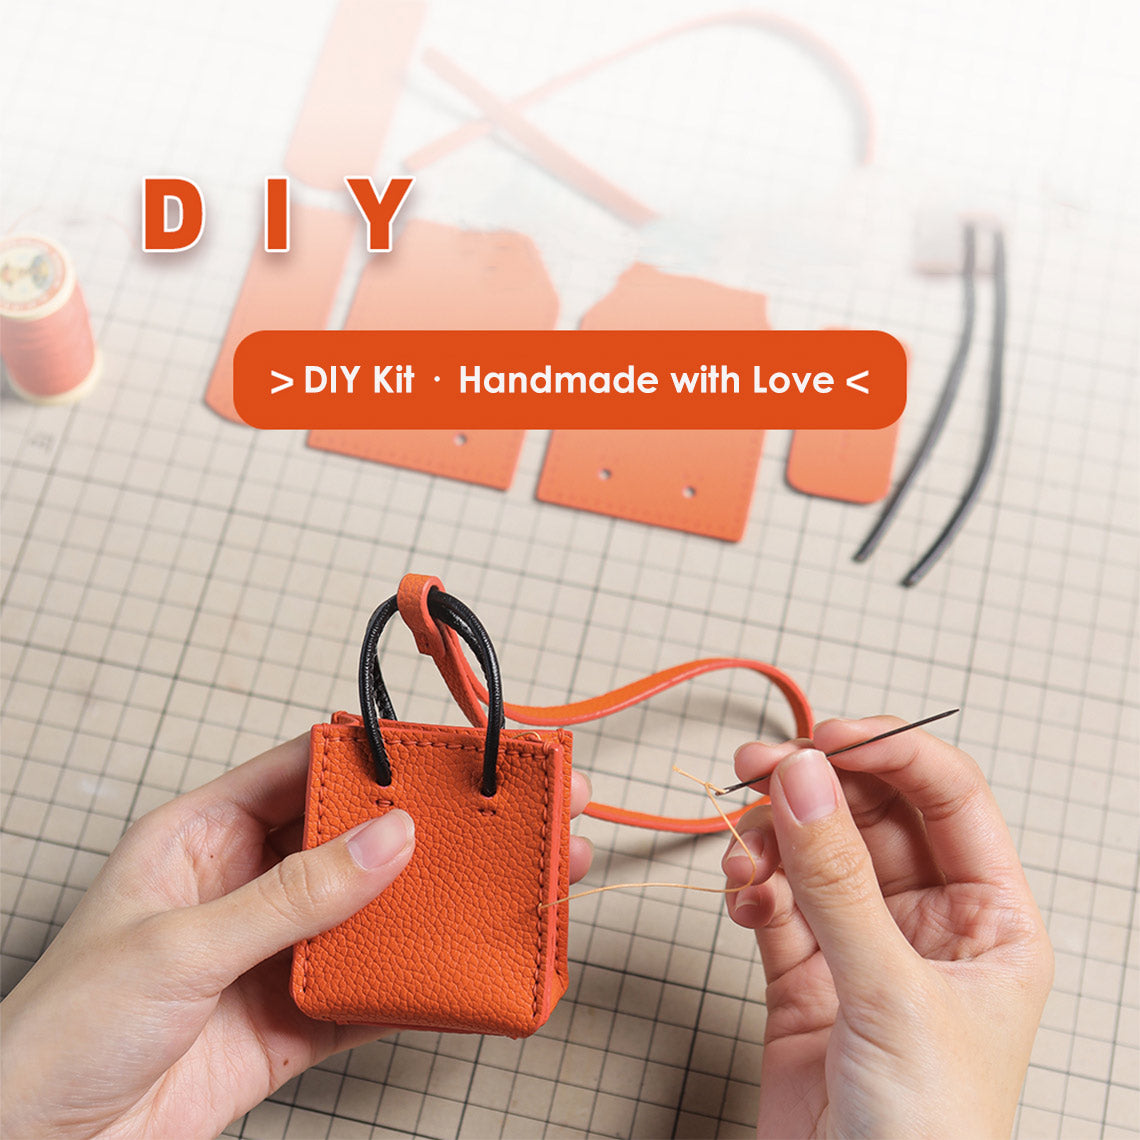 DIY orange leather bag charm kit | Handmade purse charm